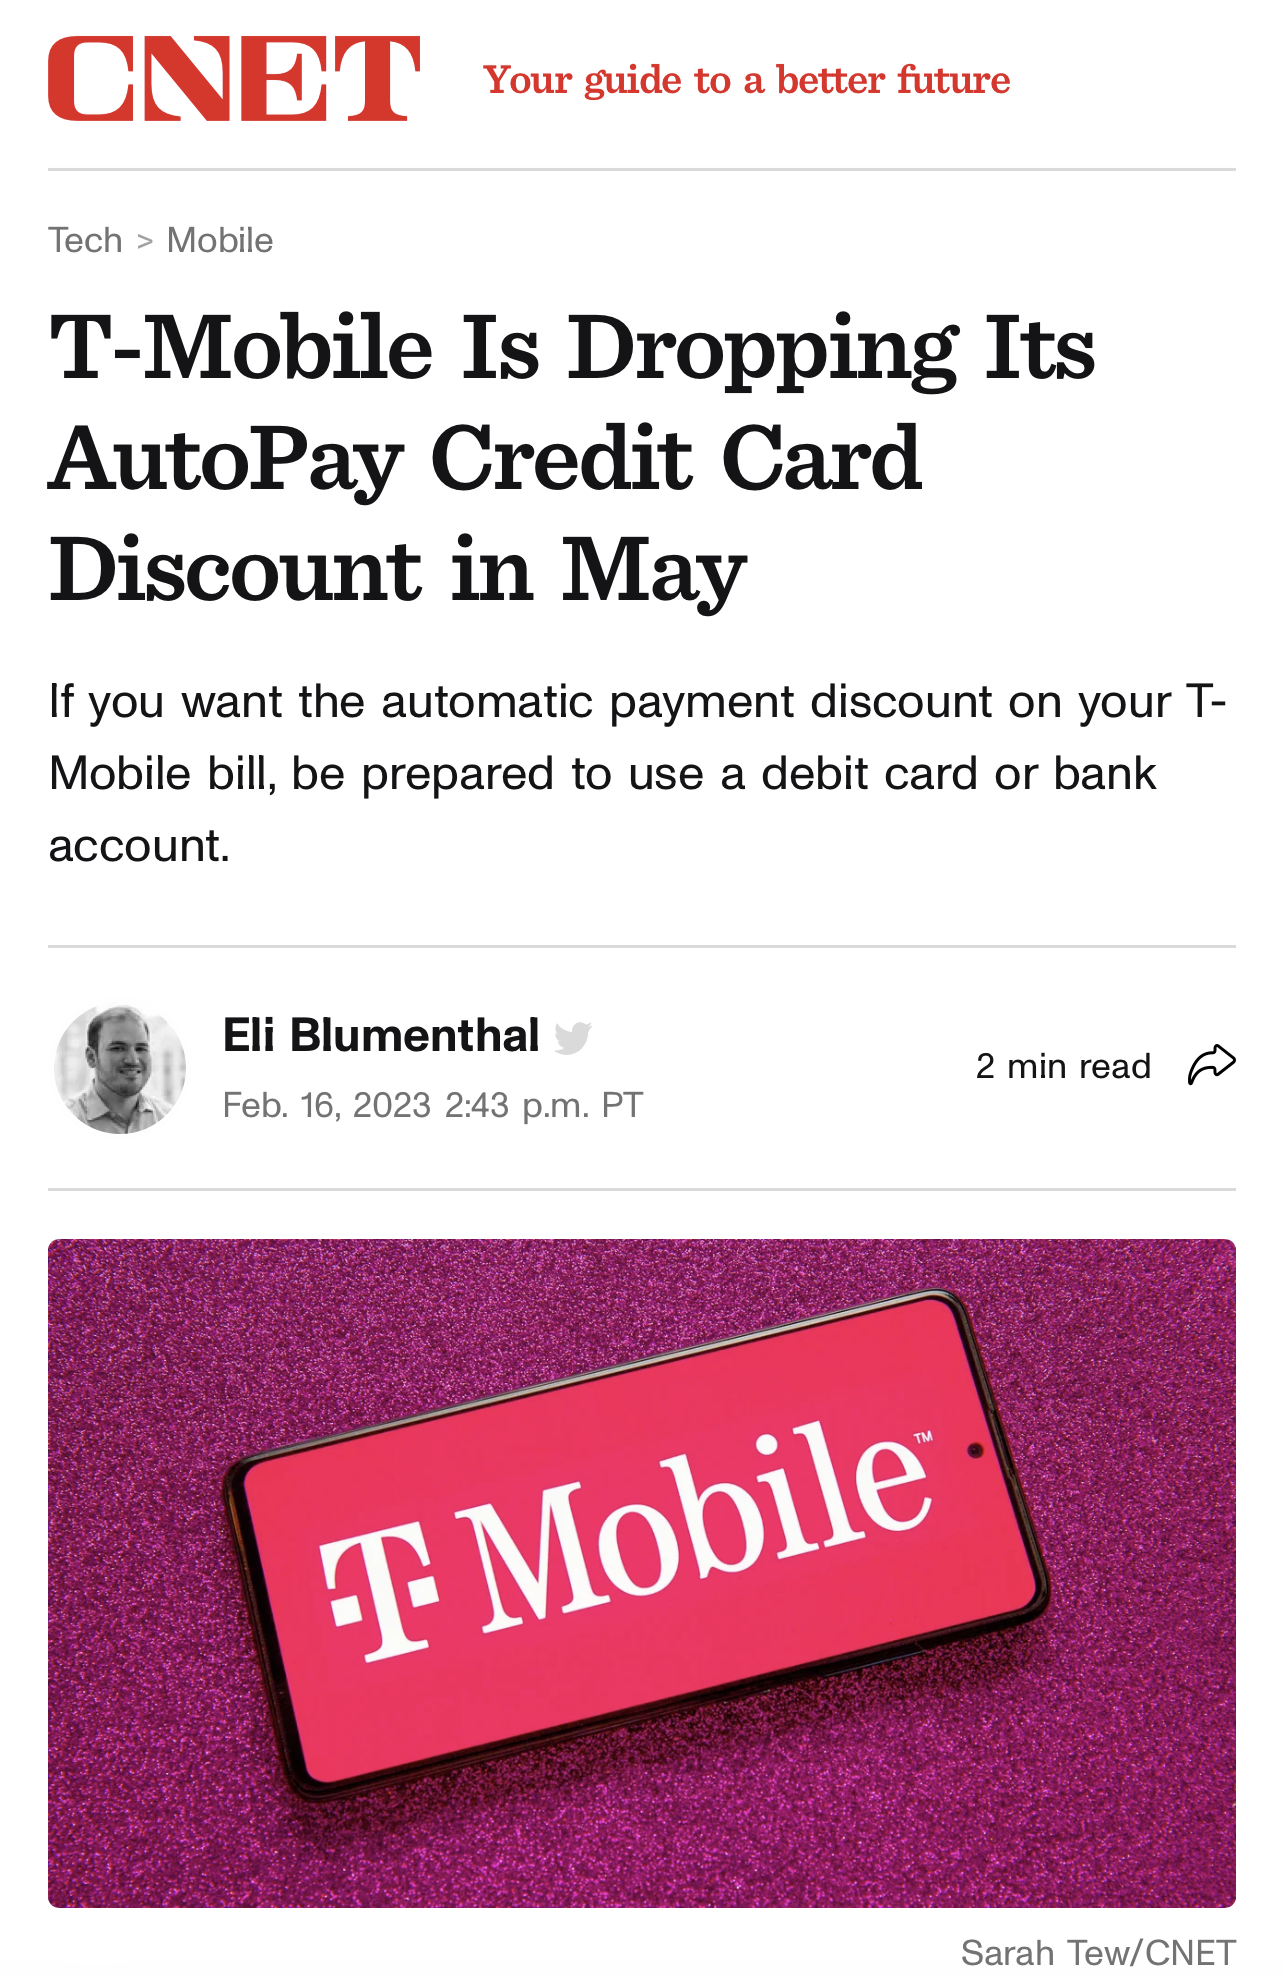 [개악] 티모빌 (Tmobile) Autopay discount payment 옵션에서 credit card 제외 5월부터